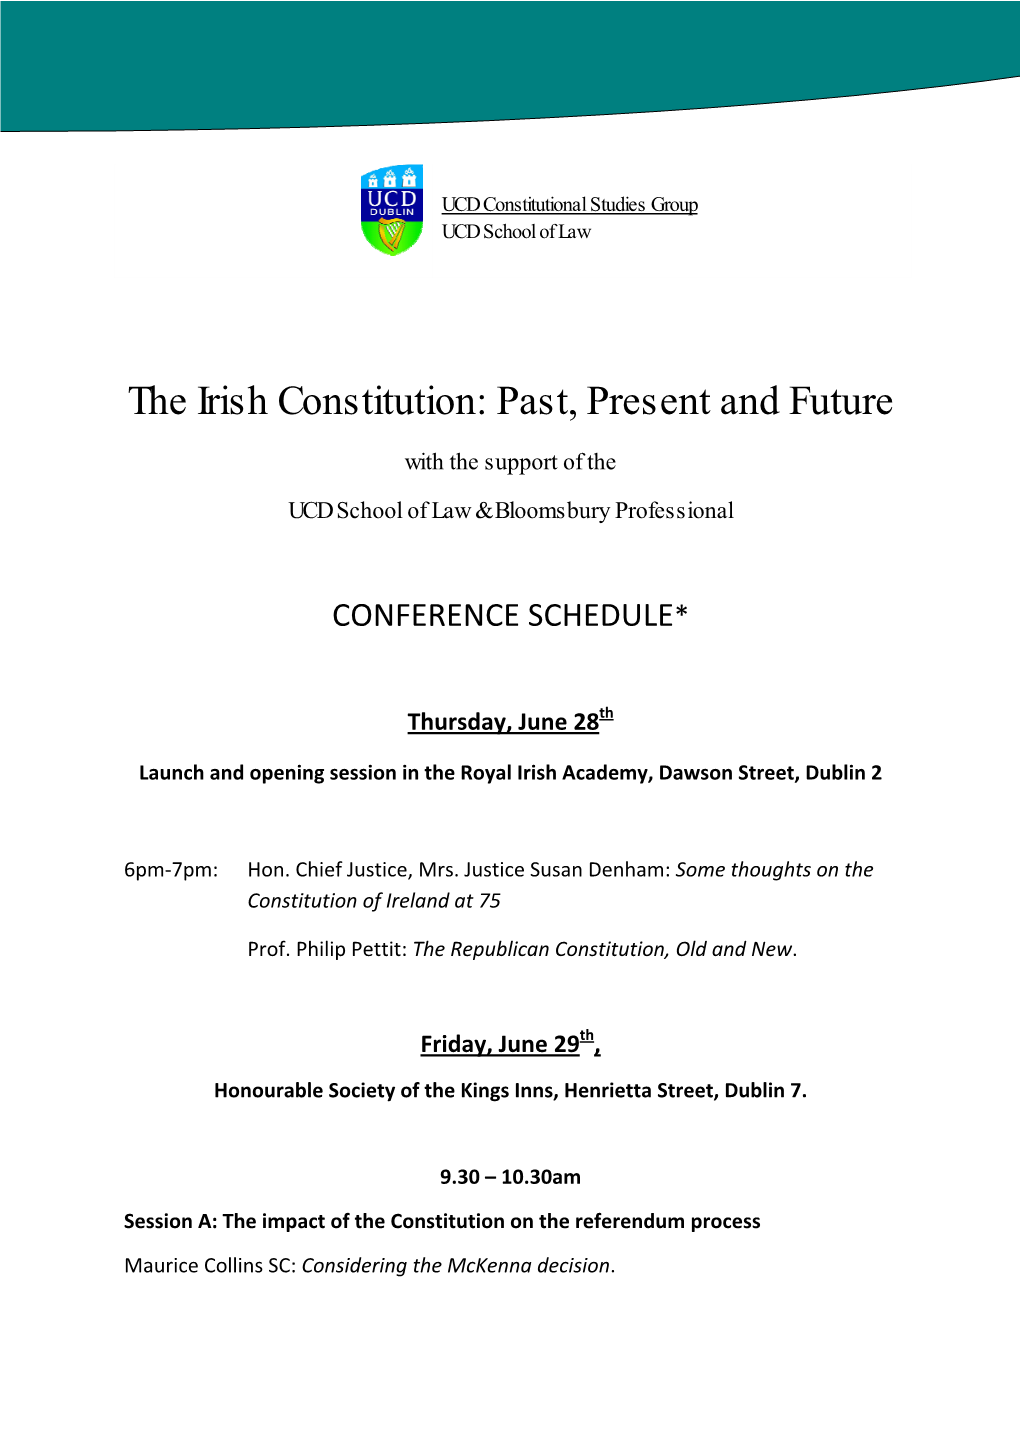 The Irish Constitution: Past, Present and Future